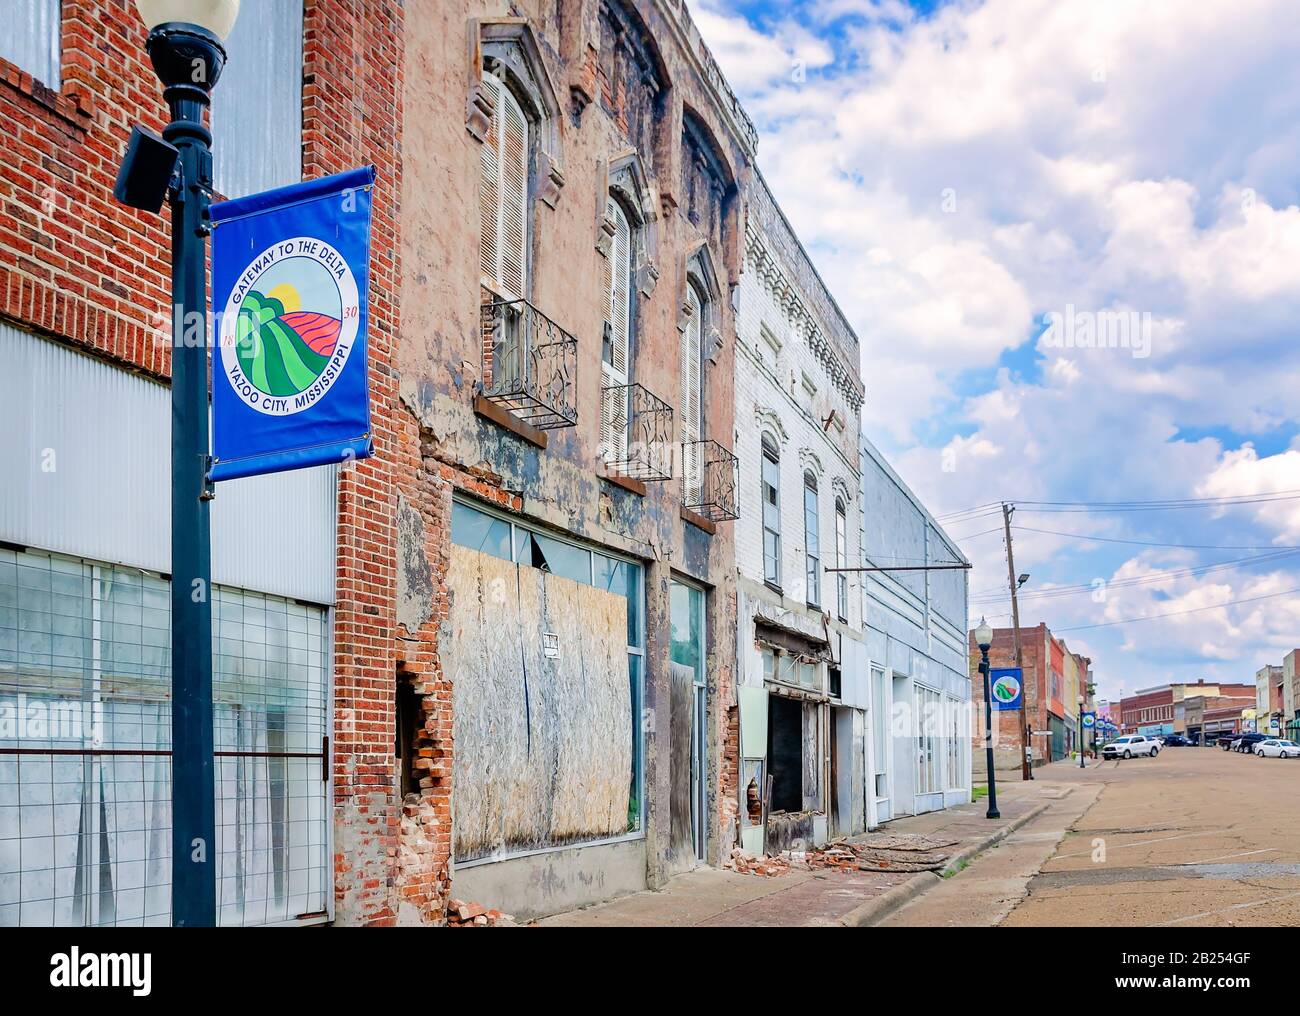 Les boutiques abandonnées sont représentées au centre-ville, le 27 juillet 2019, à Yazoo City, au Mississippi. La ville compte 11 403 personnes, dont 40,2 pour cent vivent en dessous de la pauvreté. Banque D'Images